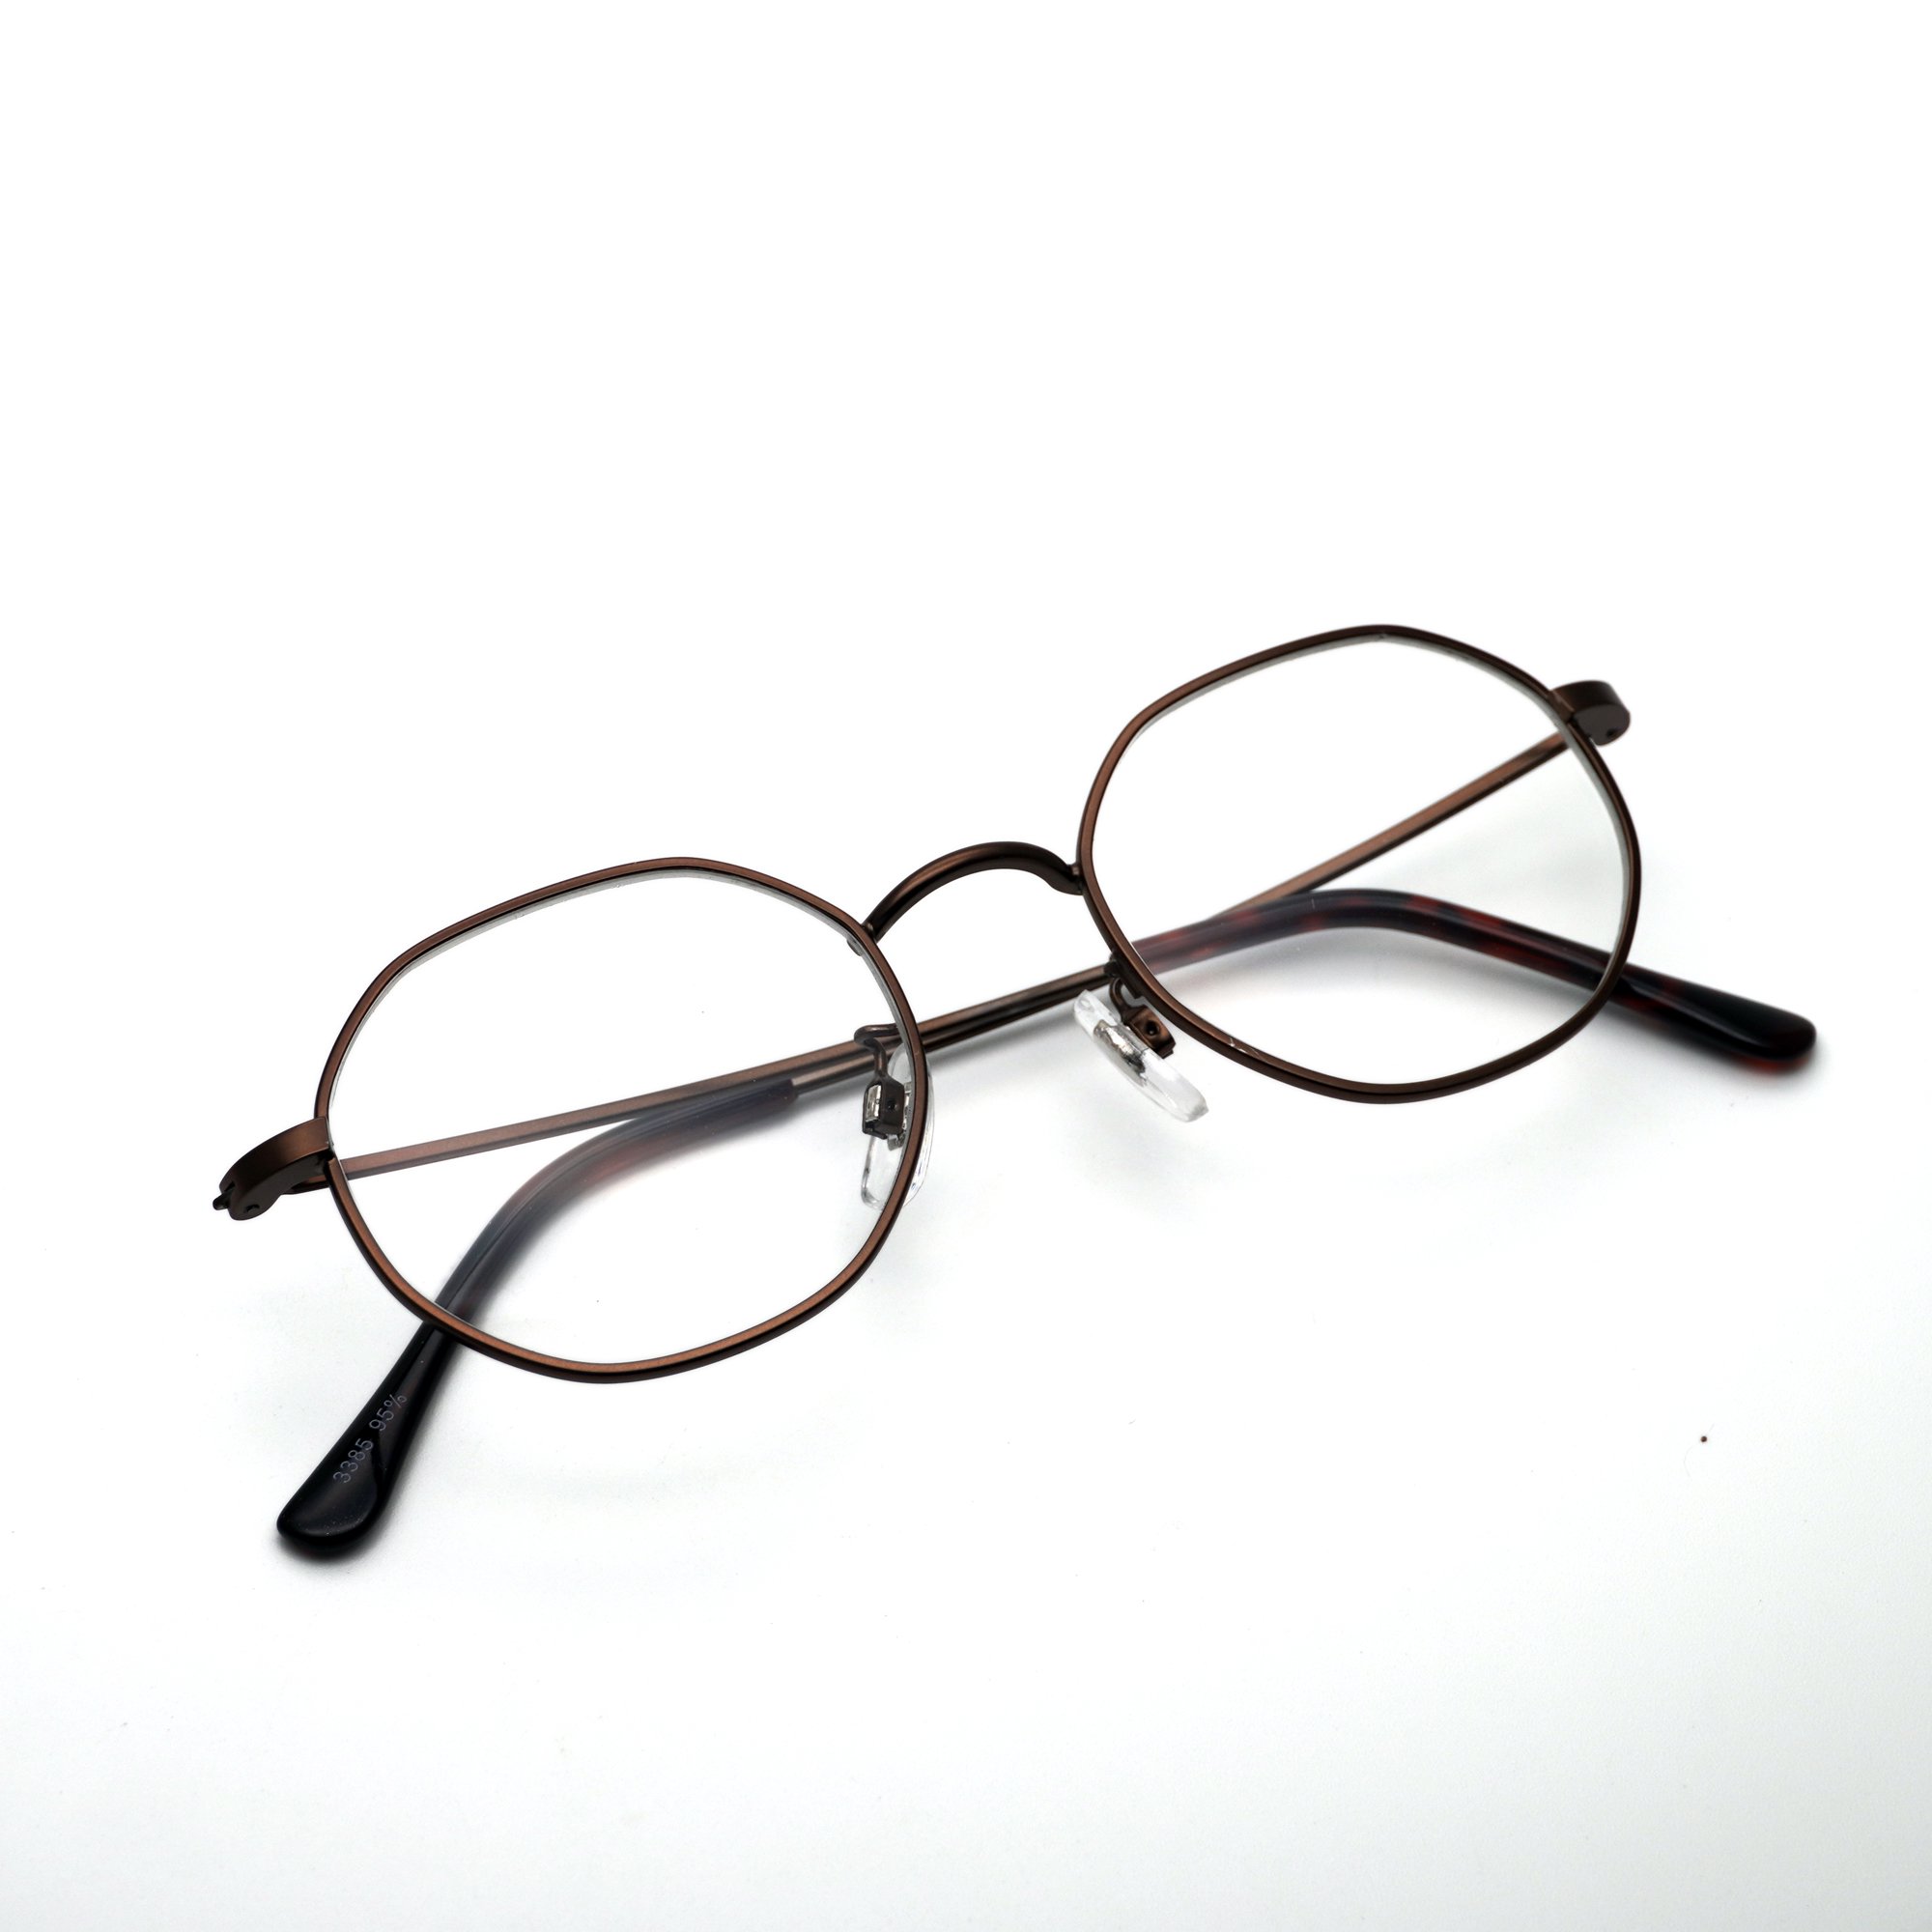 【新品】 レディース メガネ 2394-12 オクタゴン 型 フレーム 眼鏡 メタル 細身 おしゃれ venus!venus!